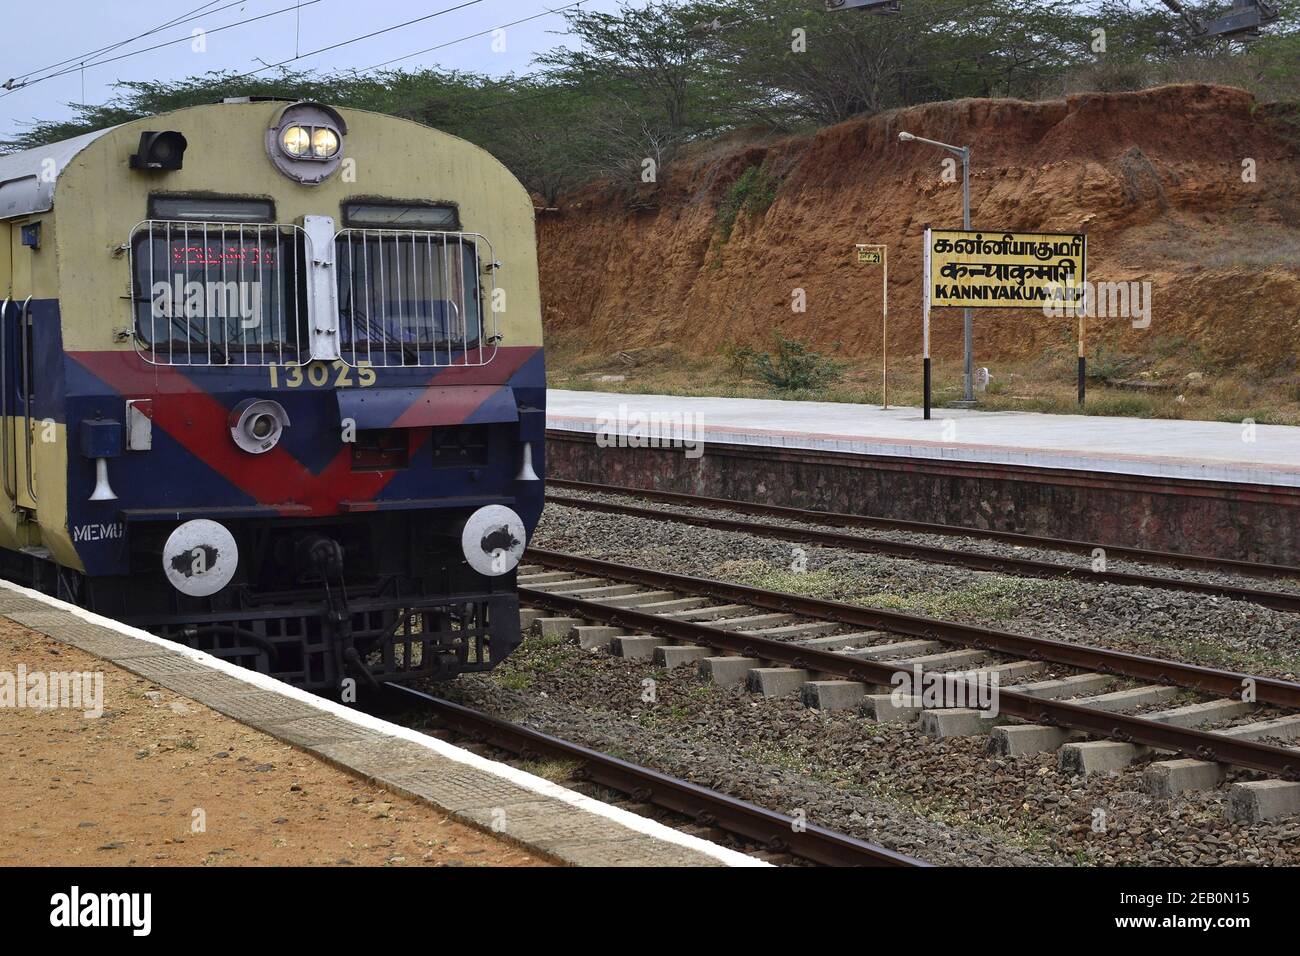 Personenzug Lokomotive Vorderansicht angekommen Kanyakumari Bahnhof Plattform. Stadtschild im Hintergrund. Kanyakumari, Tamil Nadu, Indien Stockfoto